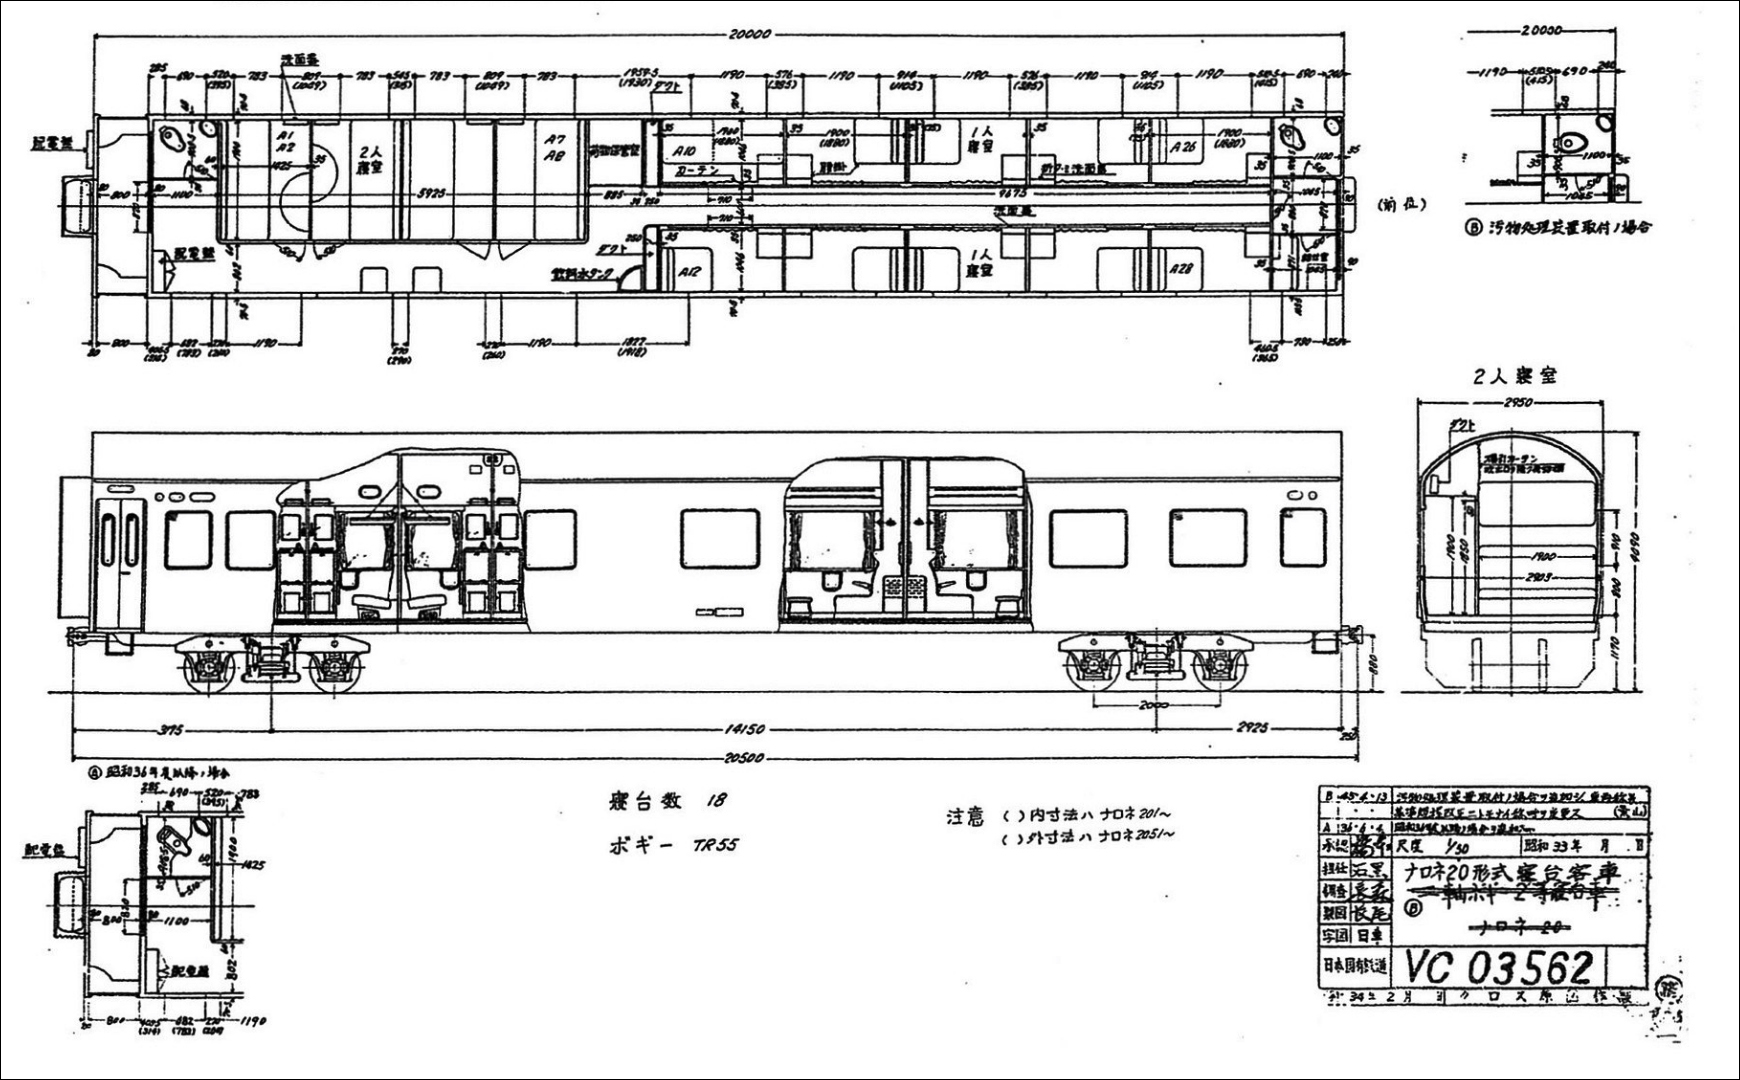 A NaRoNe 20-as típusú személykocsik jellegrajza. (Forrás: 鉄道車両ガイド, 2(24), 19. p., 2017.)